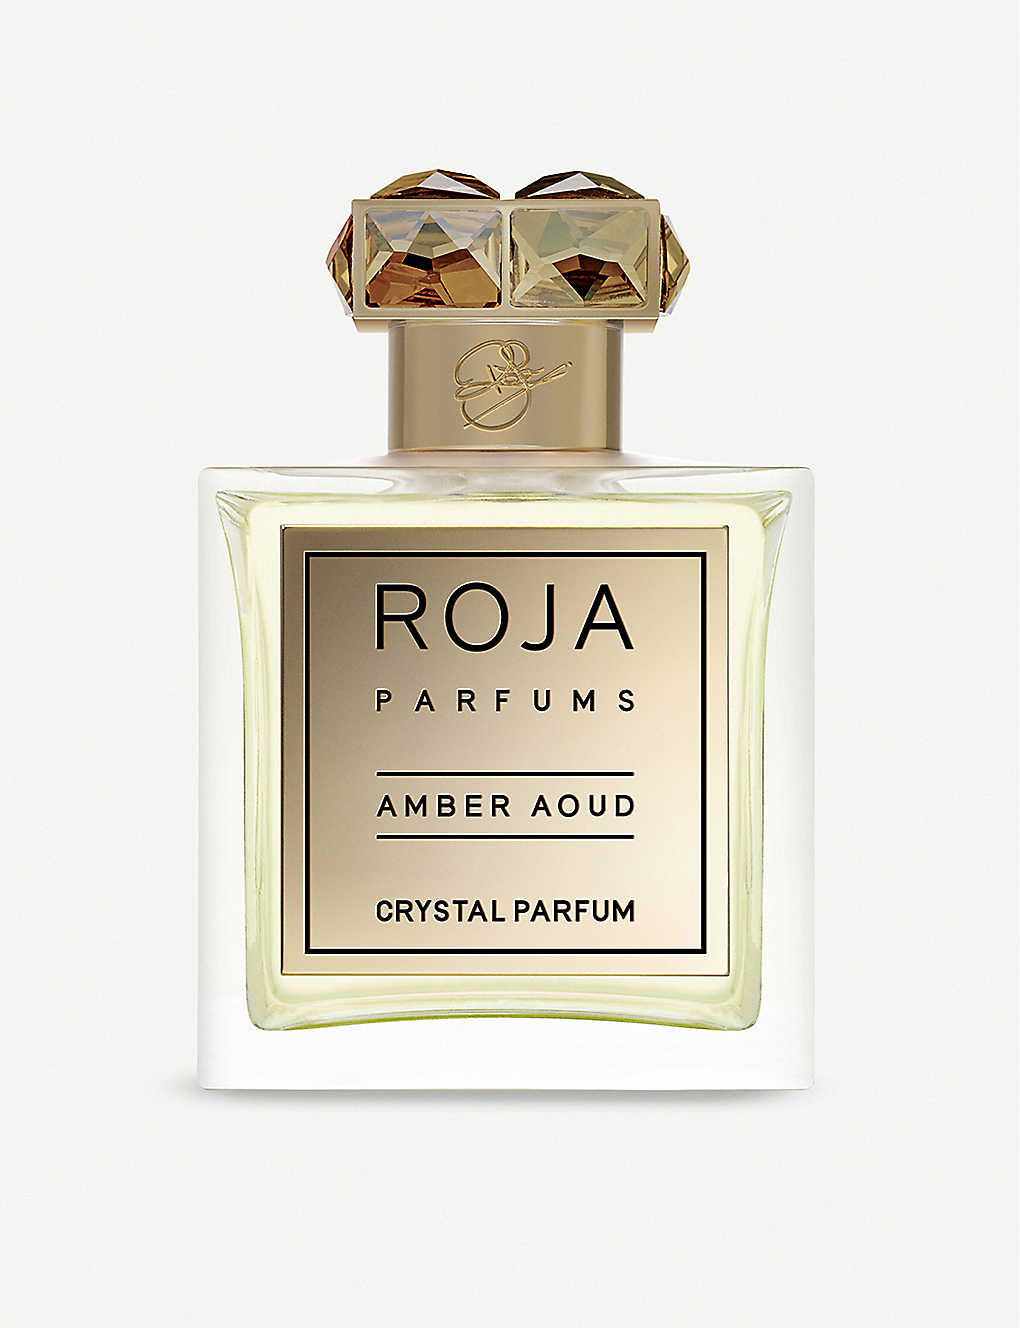 Roja Parfums Amber Aoud Crystal Parfum